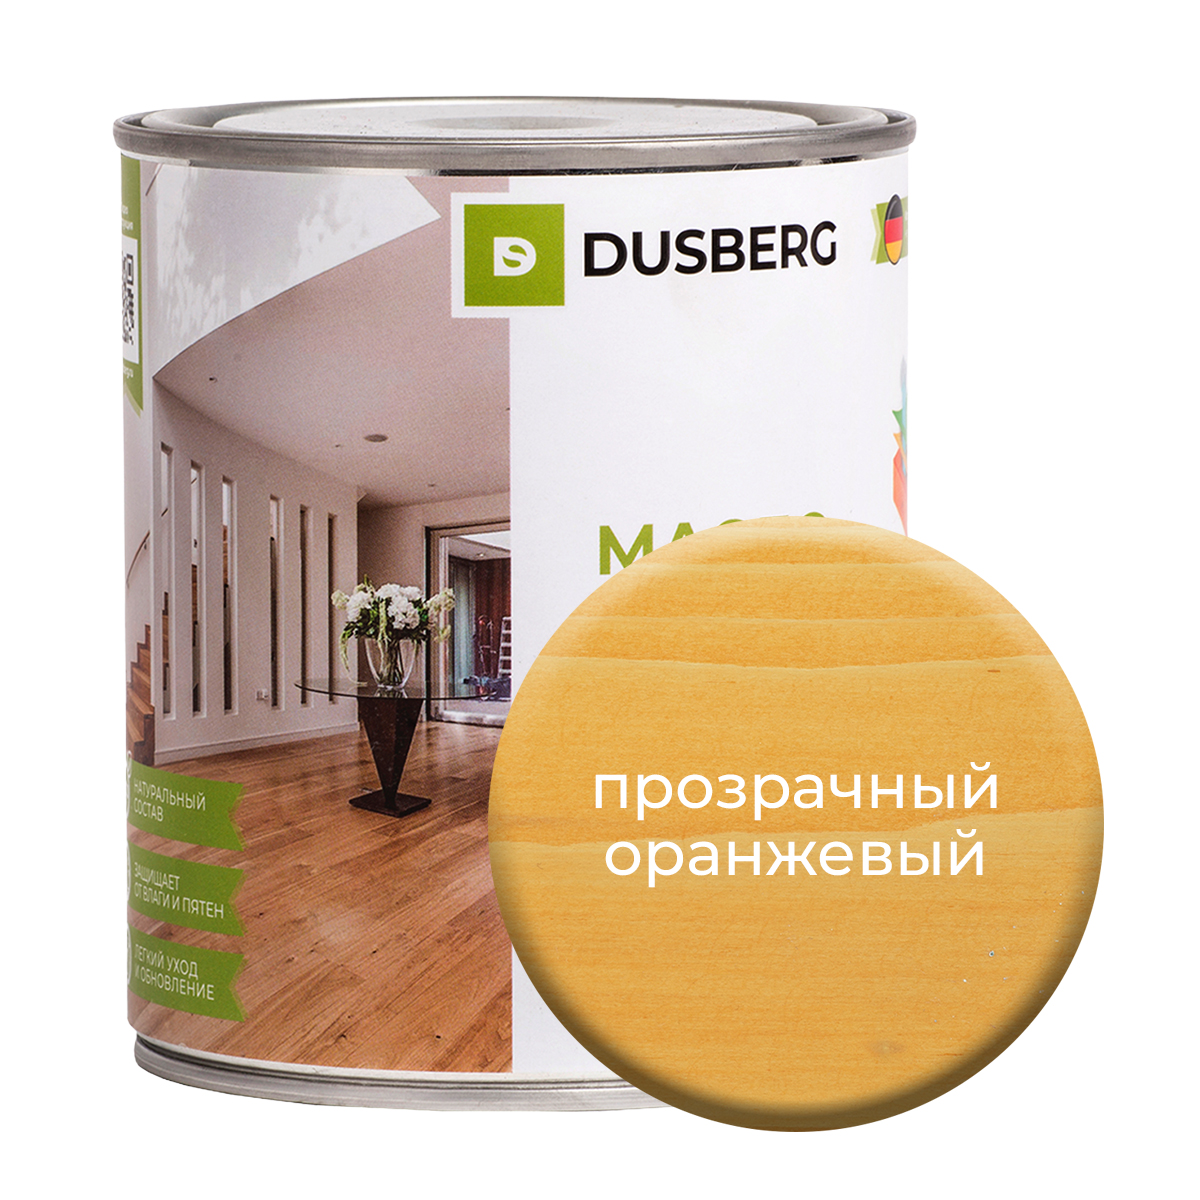 Масло Dusberg для стен на бесцветной основе, 750 мл Прозрачный оранжевый масло dusberg для стен на бесцветной основе 750 мл прозрачный светло зеленый